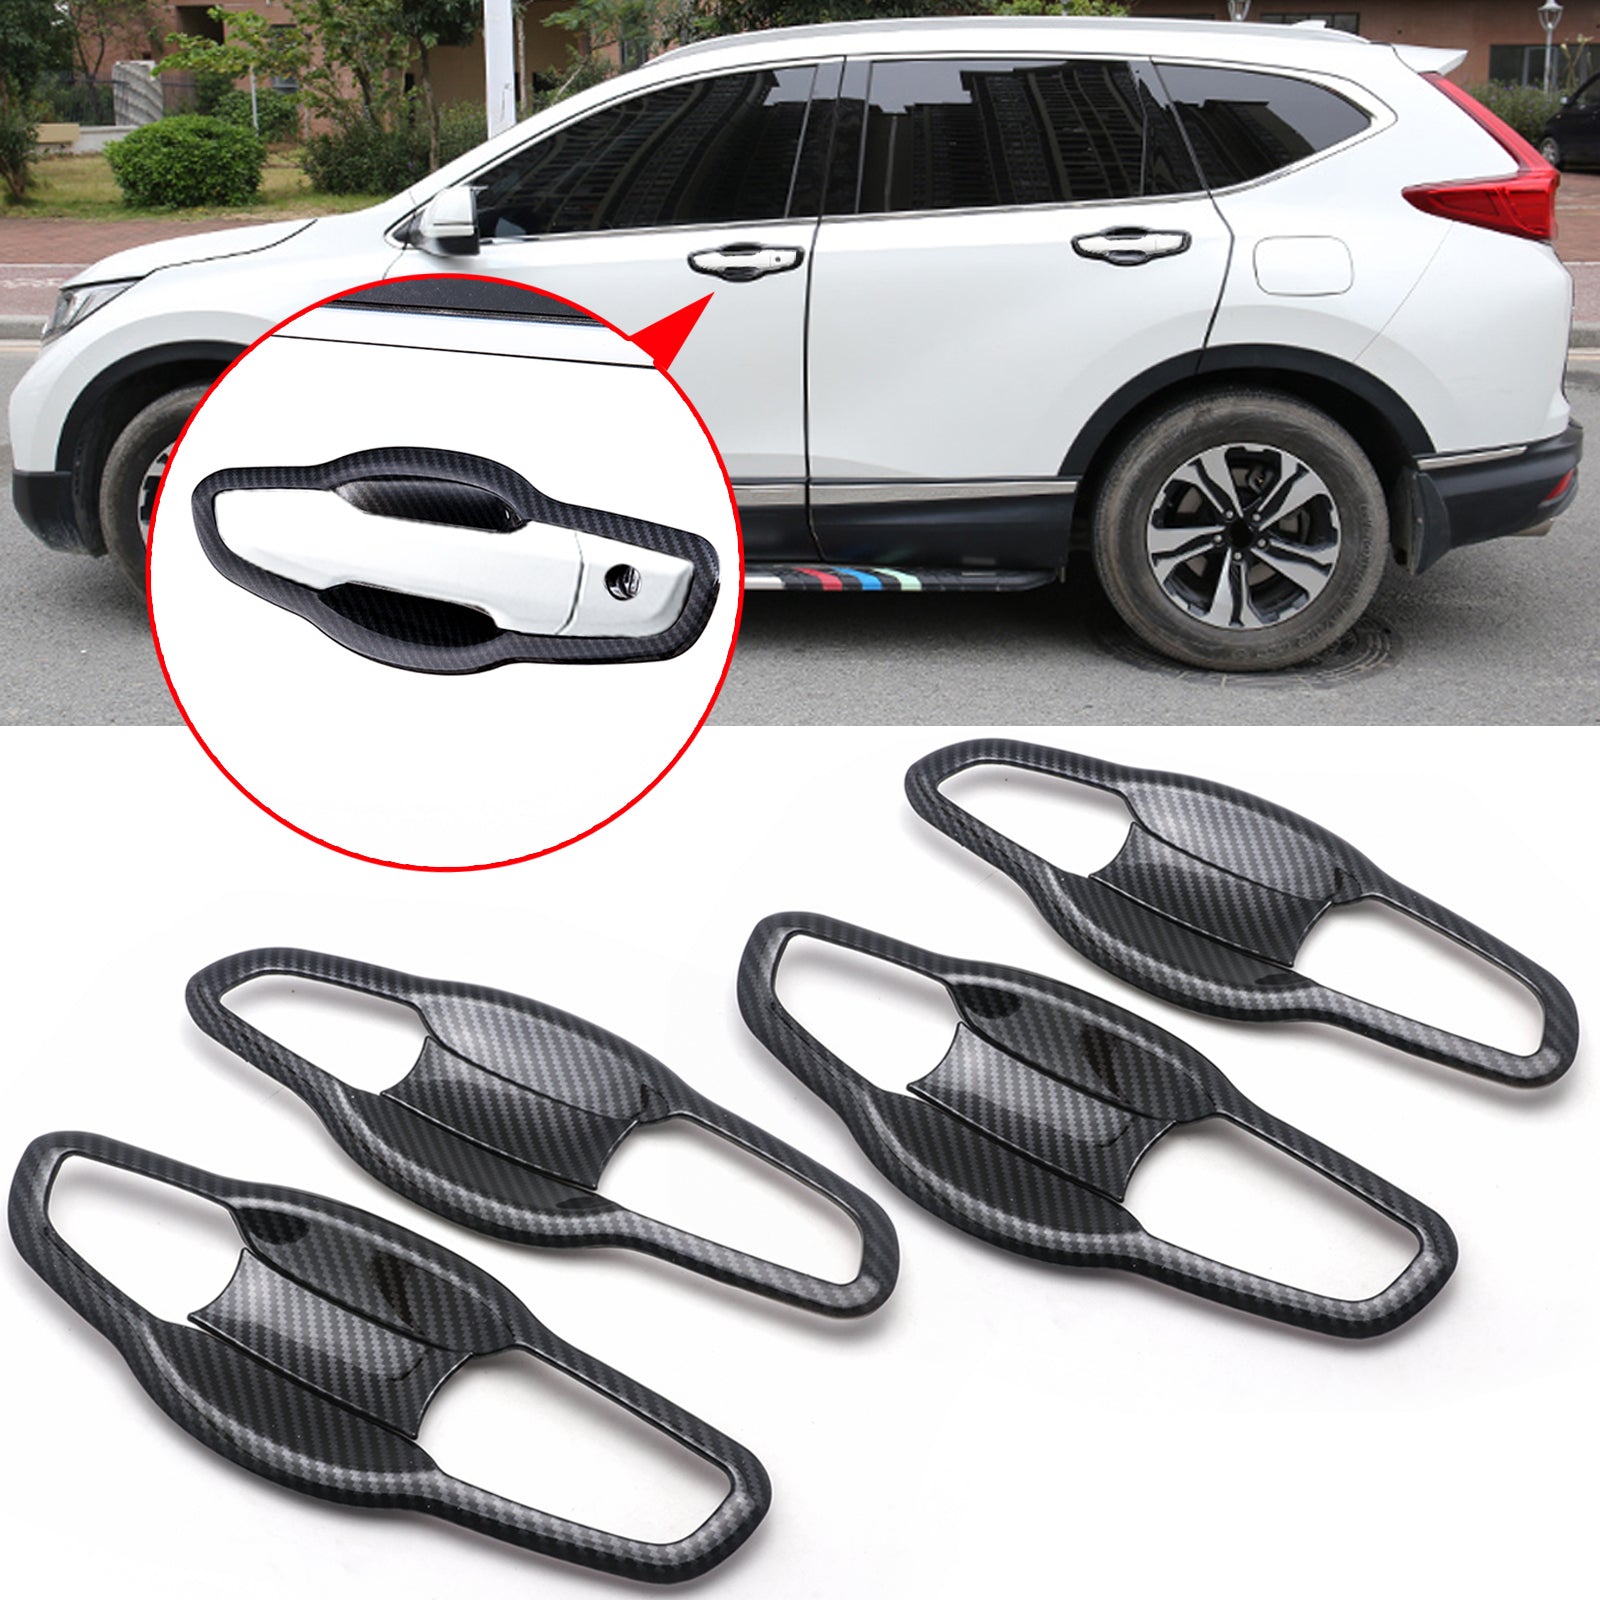 4PCS Auto Products 3D Carbon Fiber Car Automatic Door Cover Film